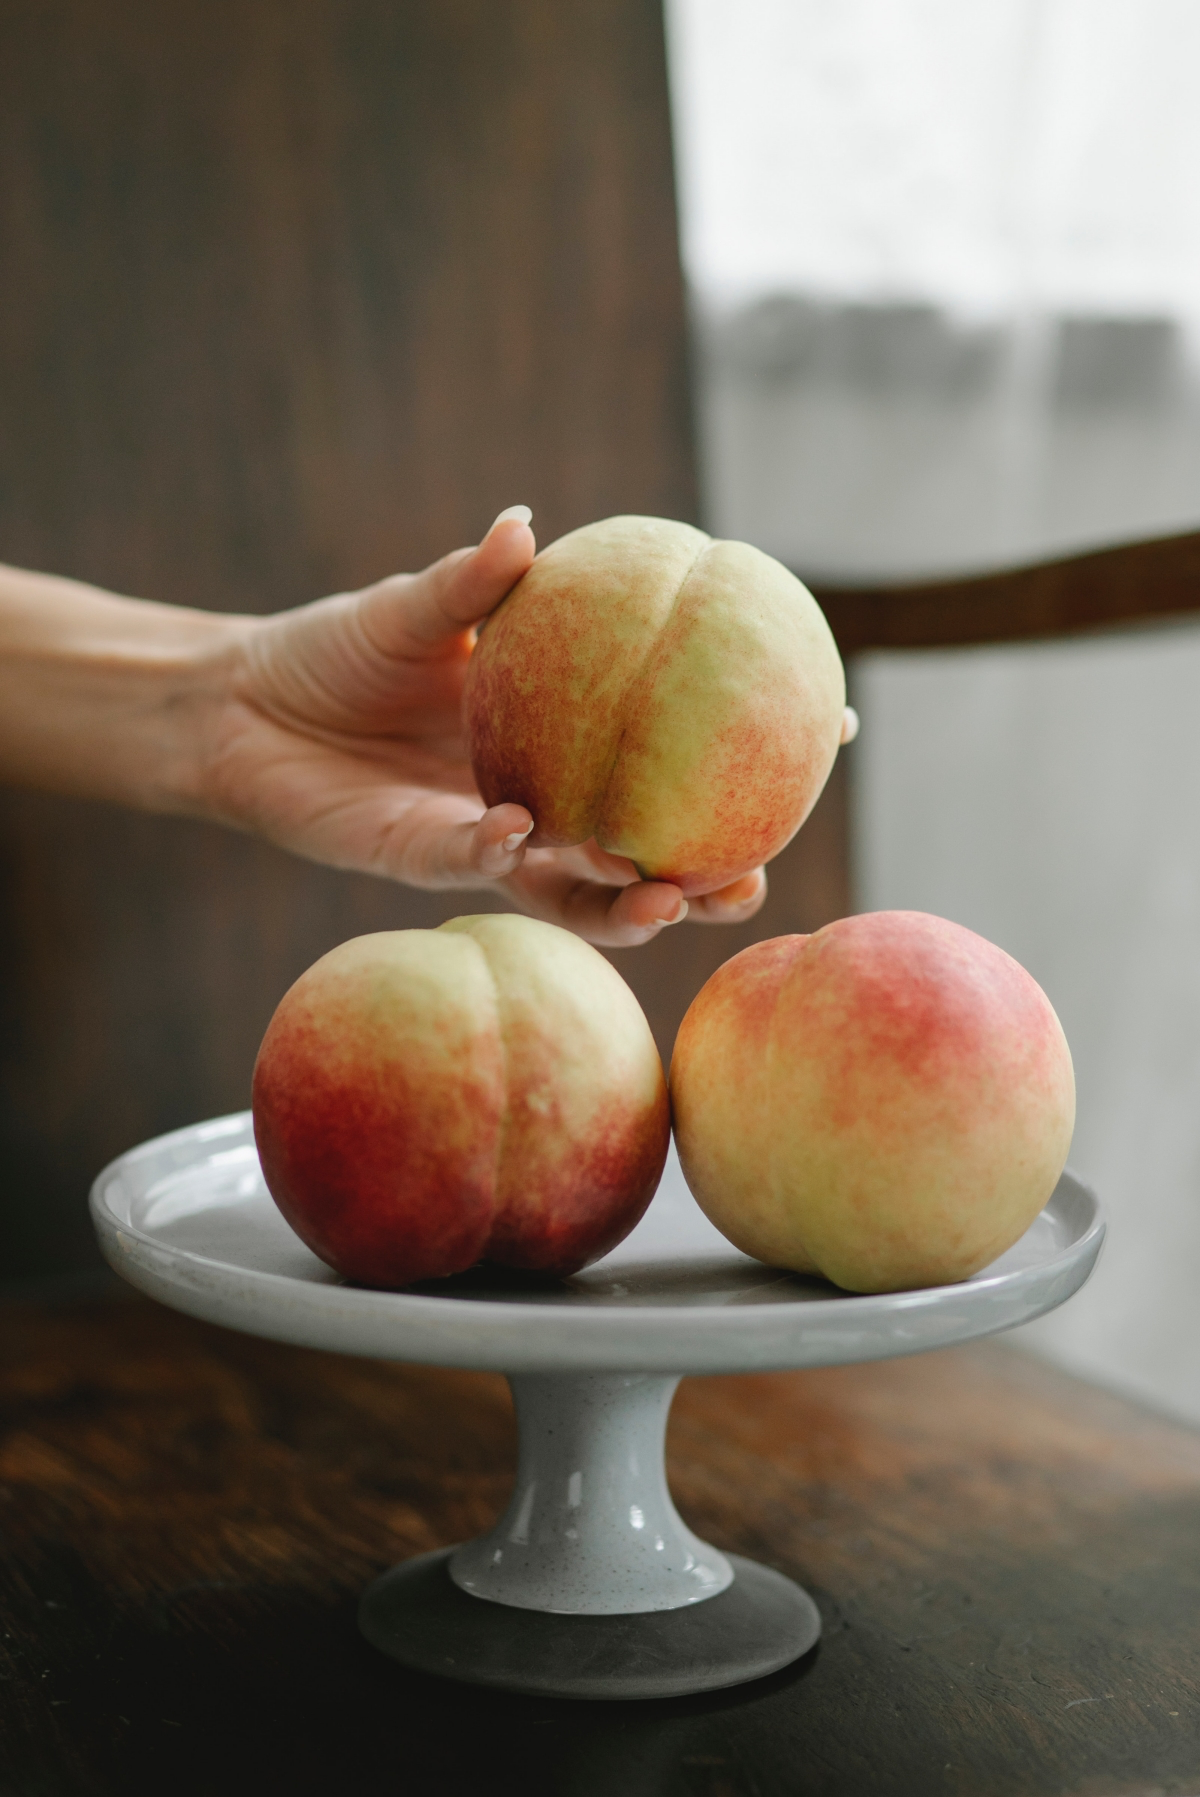 peaches vs nectarines vs apricots